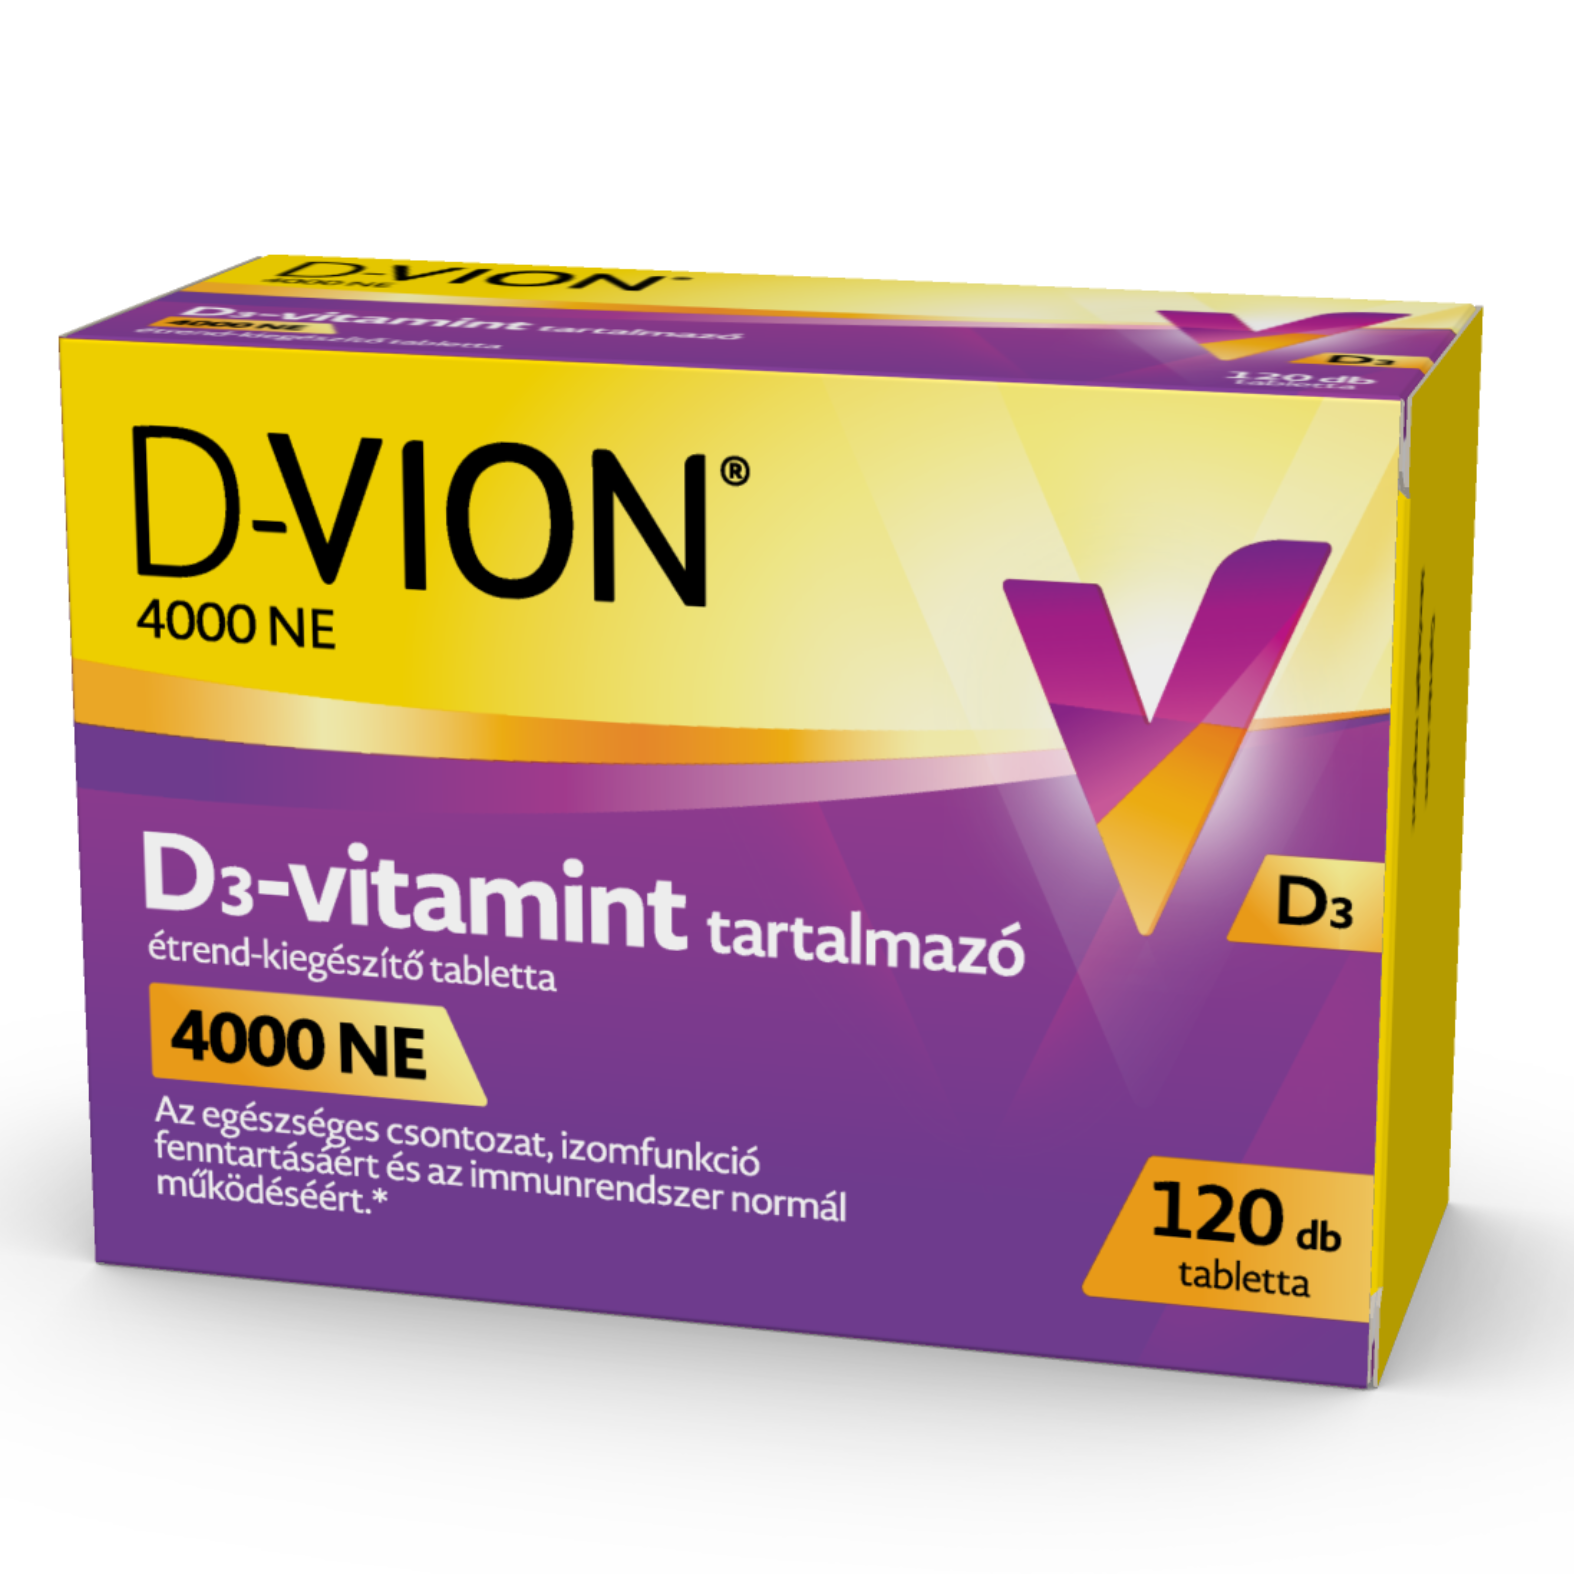 D-Vion 4000 NE D3-vitamint tartalmazó tabletta 